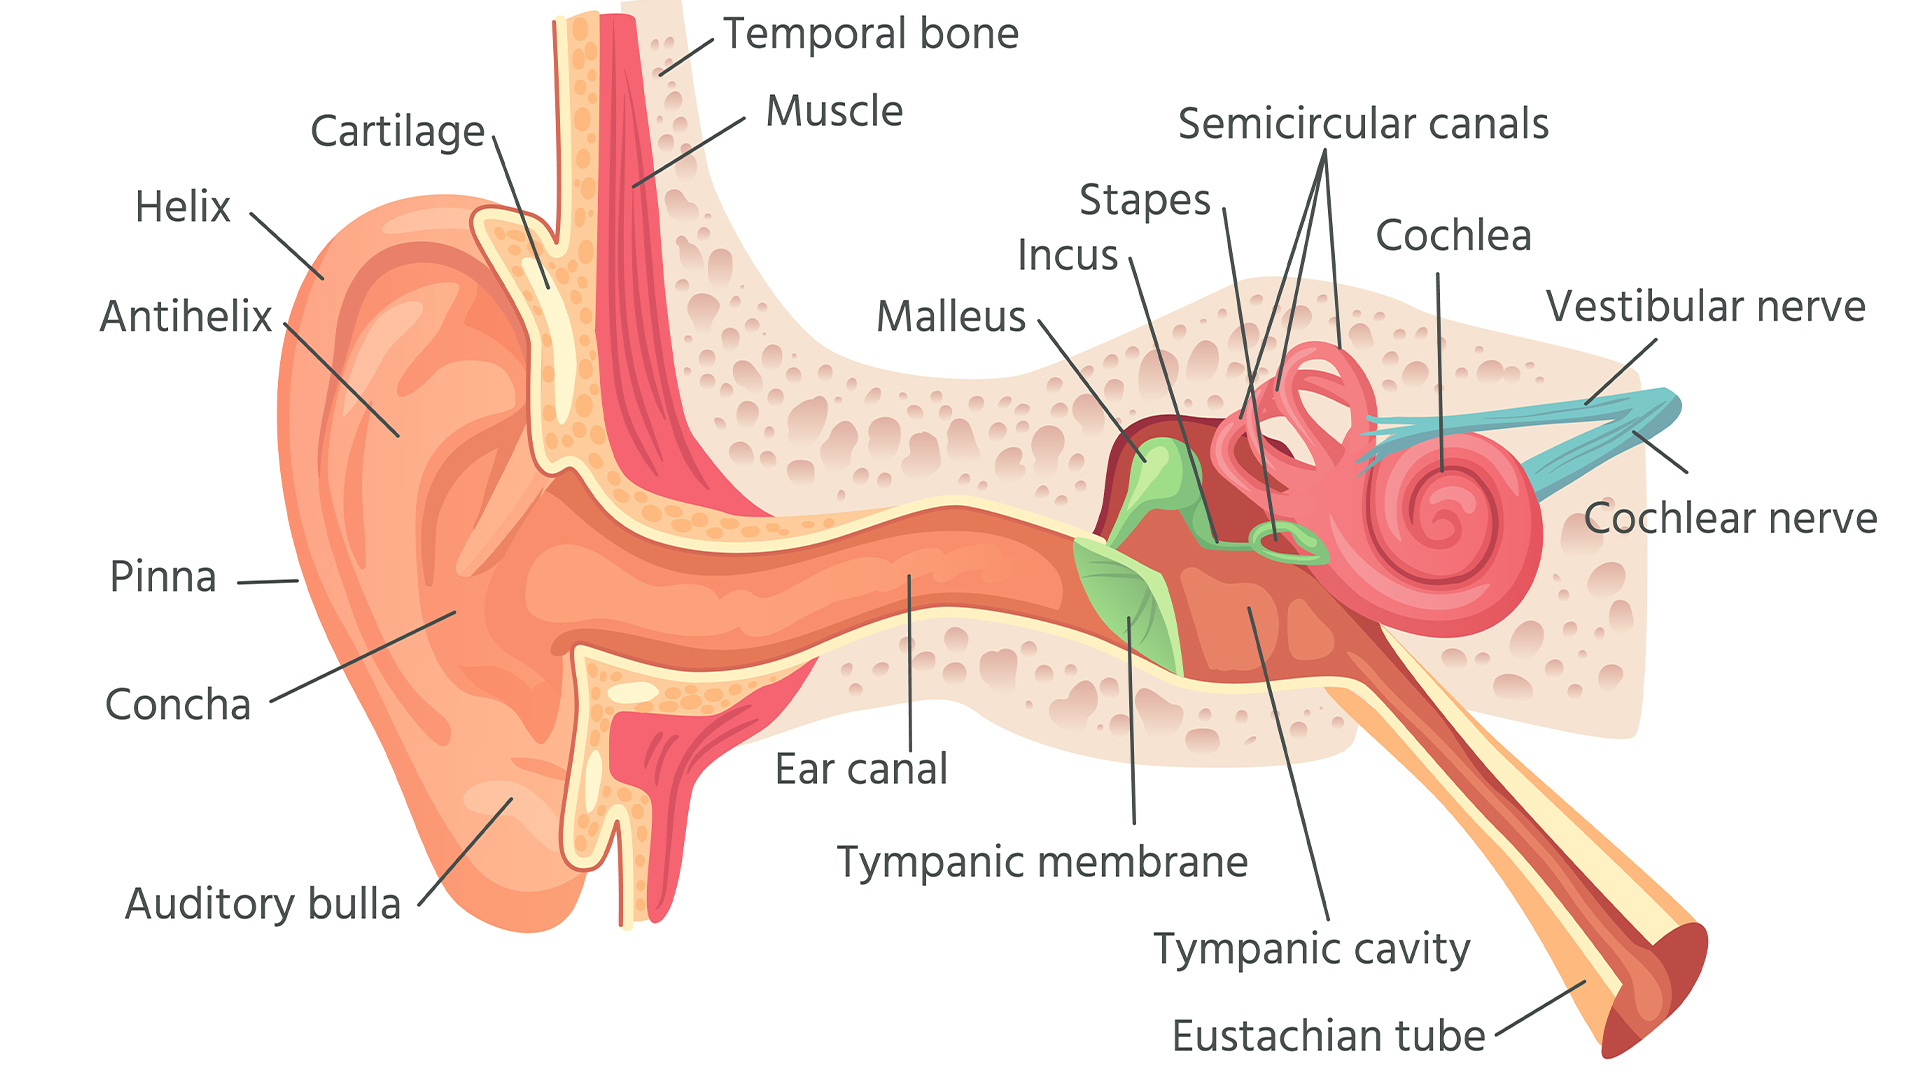 Етикетирана схема на структурата на външното и вътрешното ухо;  Евстахиевата тръба може да се види най-вдясно, простираща се под наклон от средното ухо